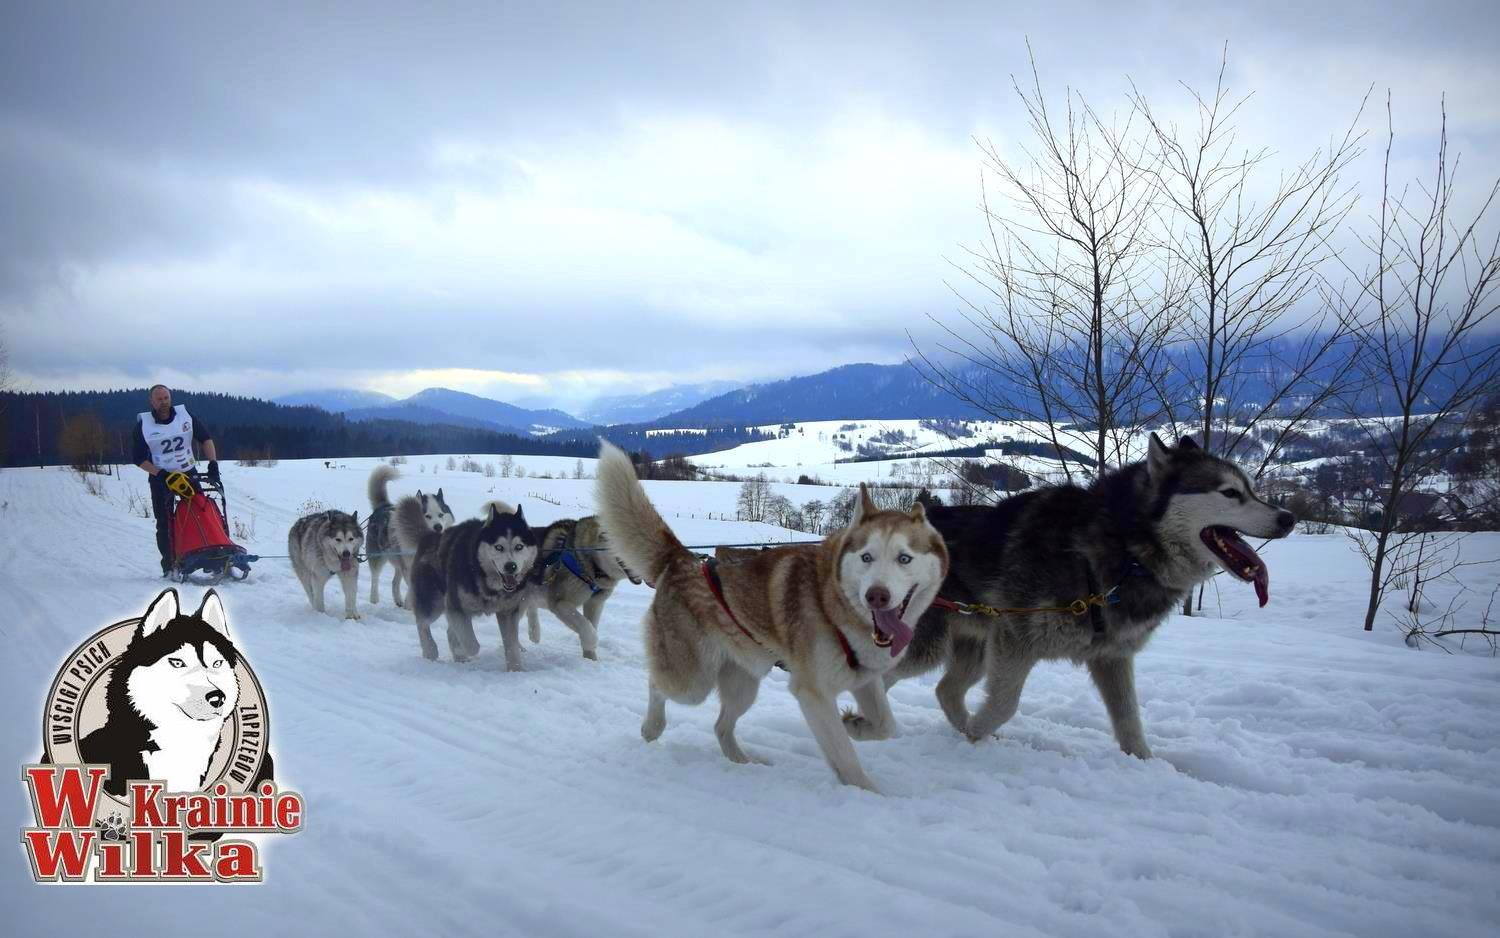 W Krainie Wilka – wyścigi psich zaprzęgów w Bieszczadach